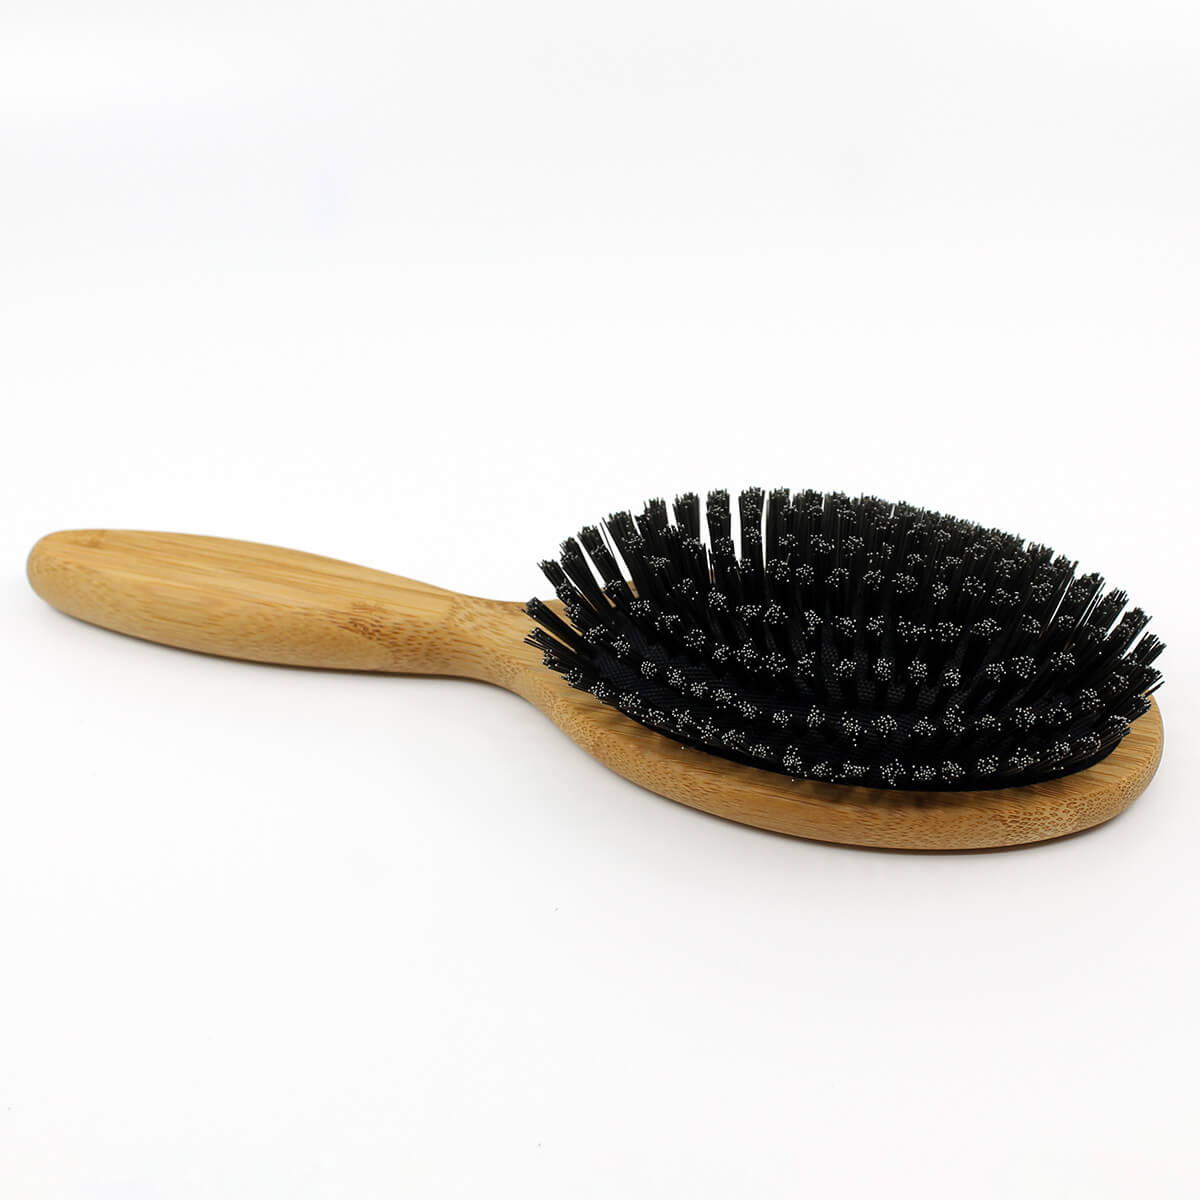 Dum reagere ødemark Vegan Boar-Bristle Brush | Henna Color Lab®